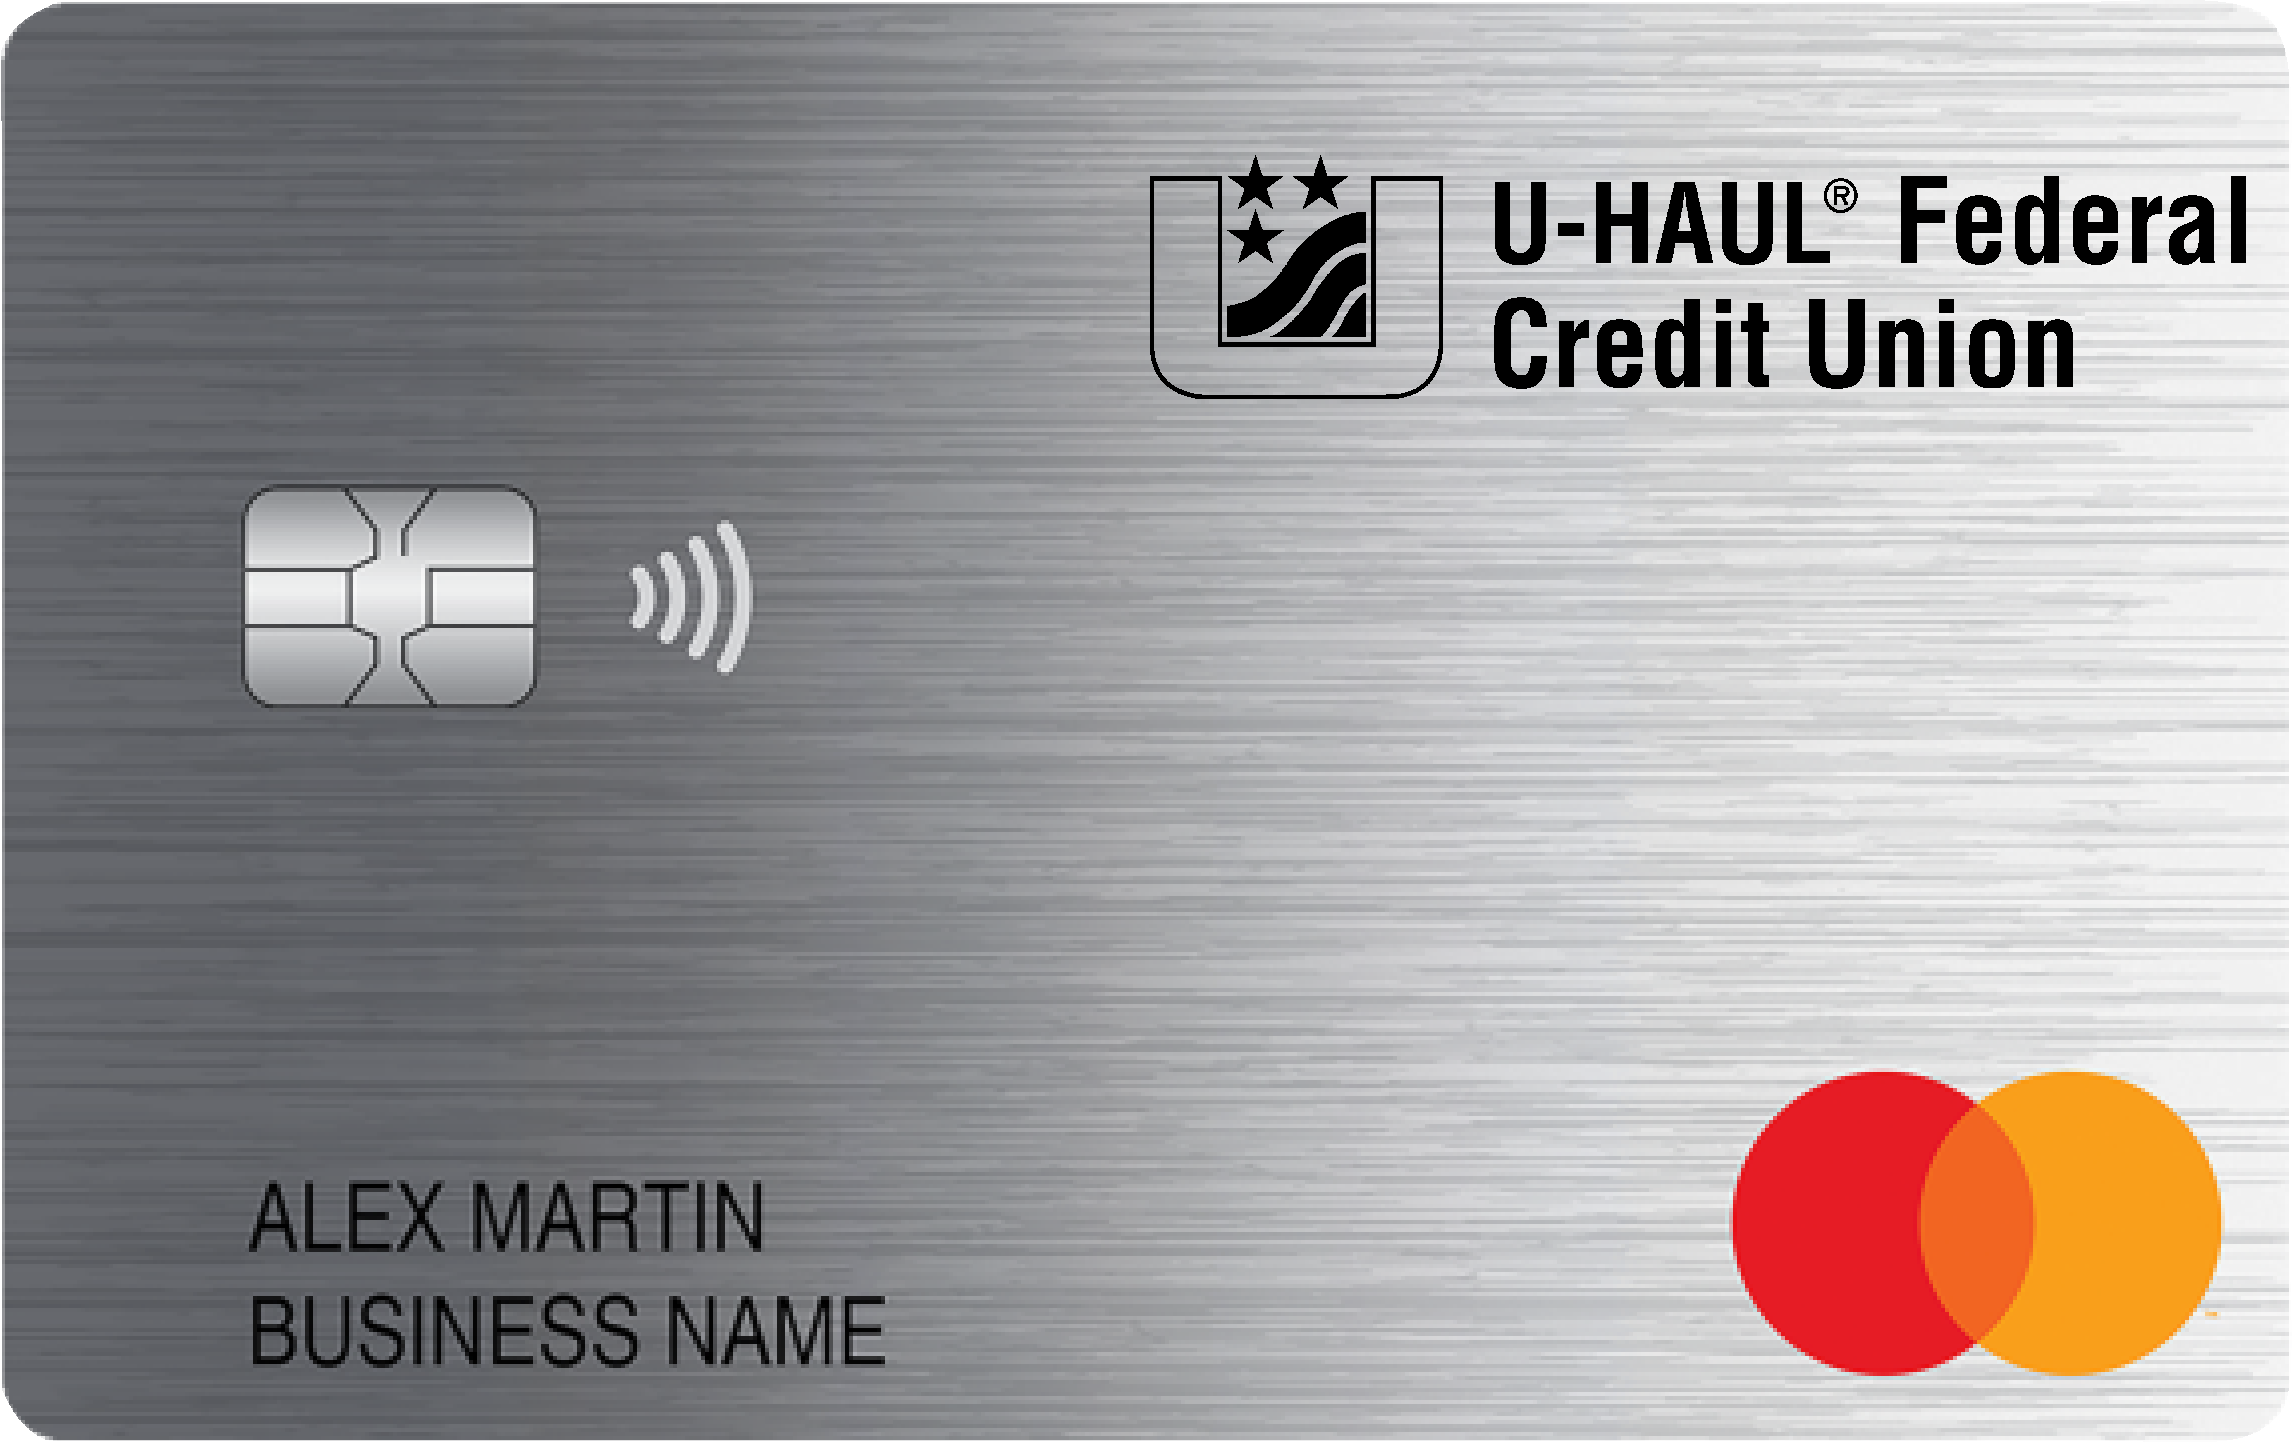 U-Haul Federal Credit Union Smart Business Rewards Card